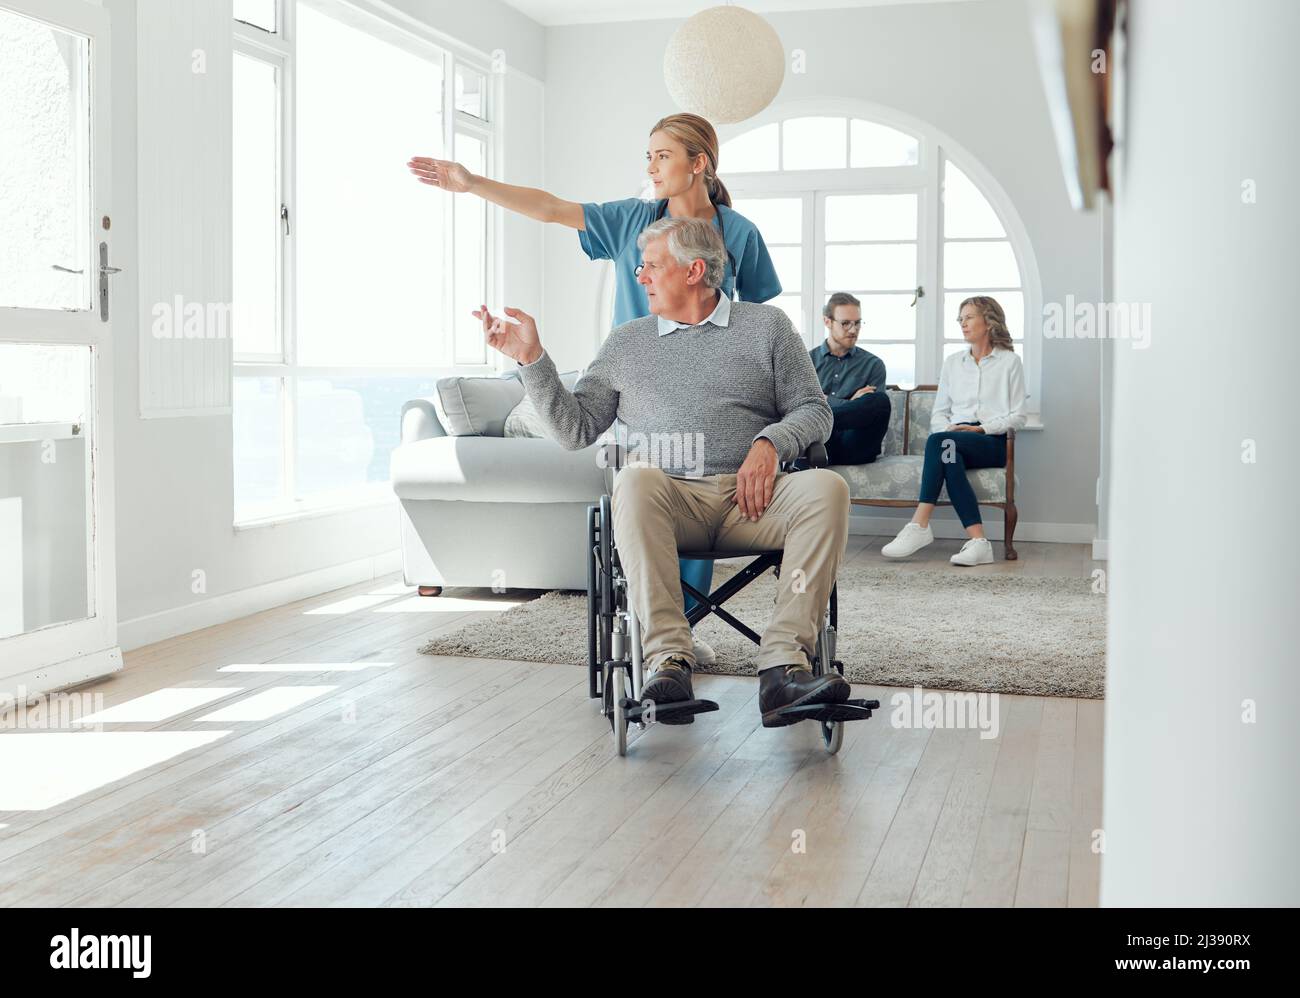 Levez les bras pendant que nous regardons à l'extérieur. Photo d'une jeune infirmière qui s'occupe d'un homme plus âgé en fauteuil roulant. Banque D'Images